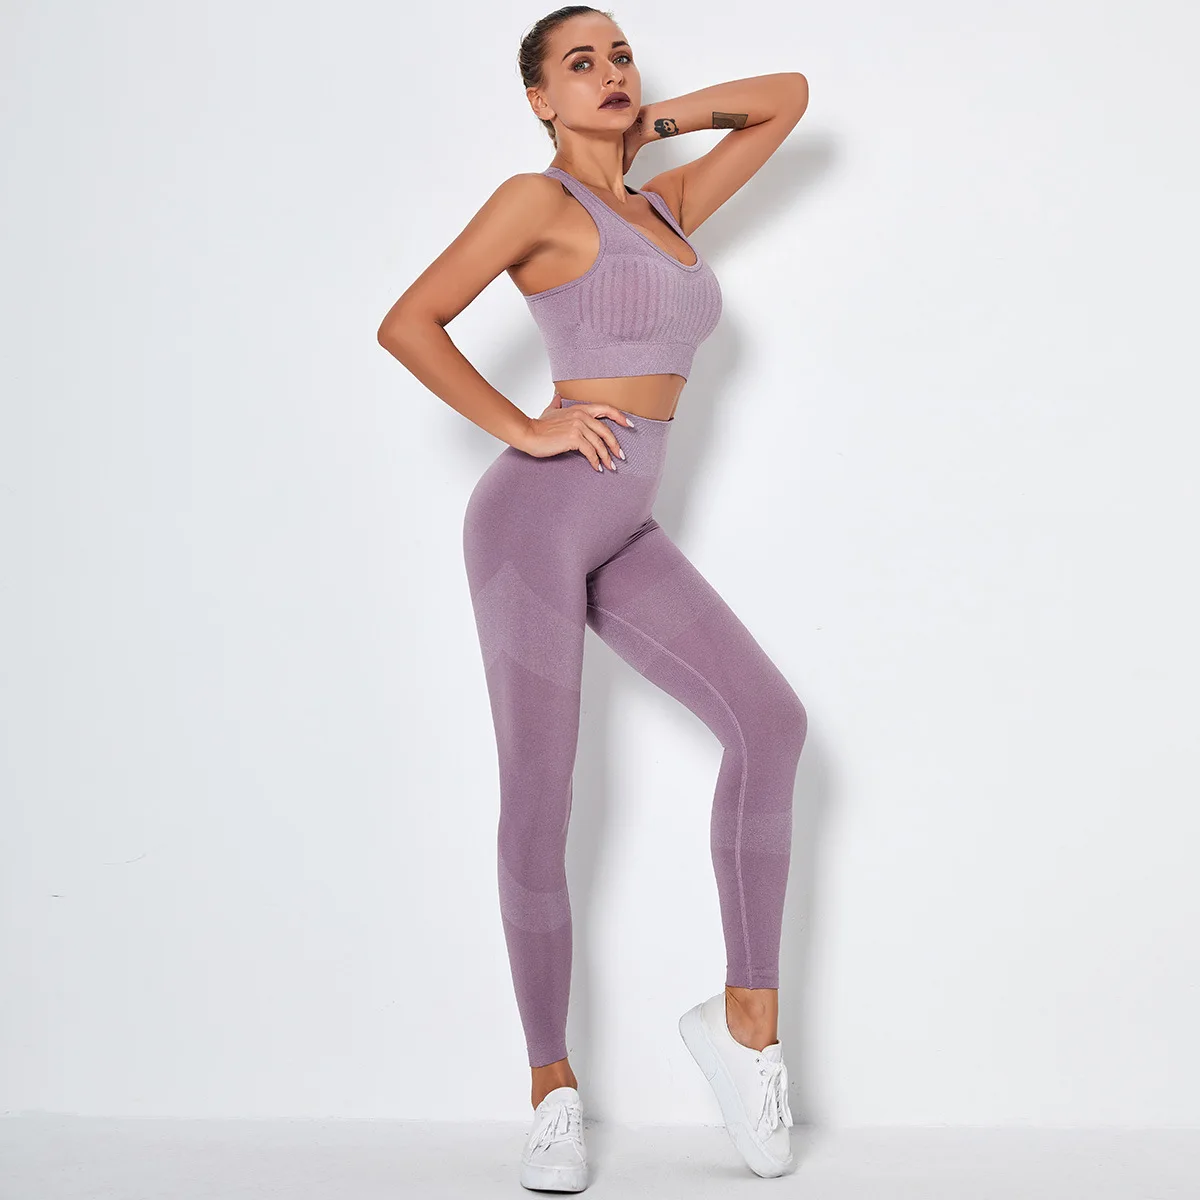 

AOLA Custom Tracksuit With Logo Women Yoga Repreve Compression Legging Bra Fitness Gym Set